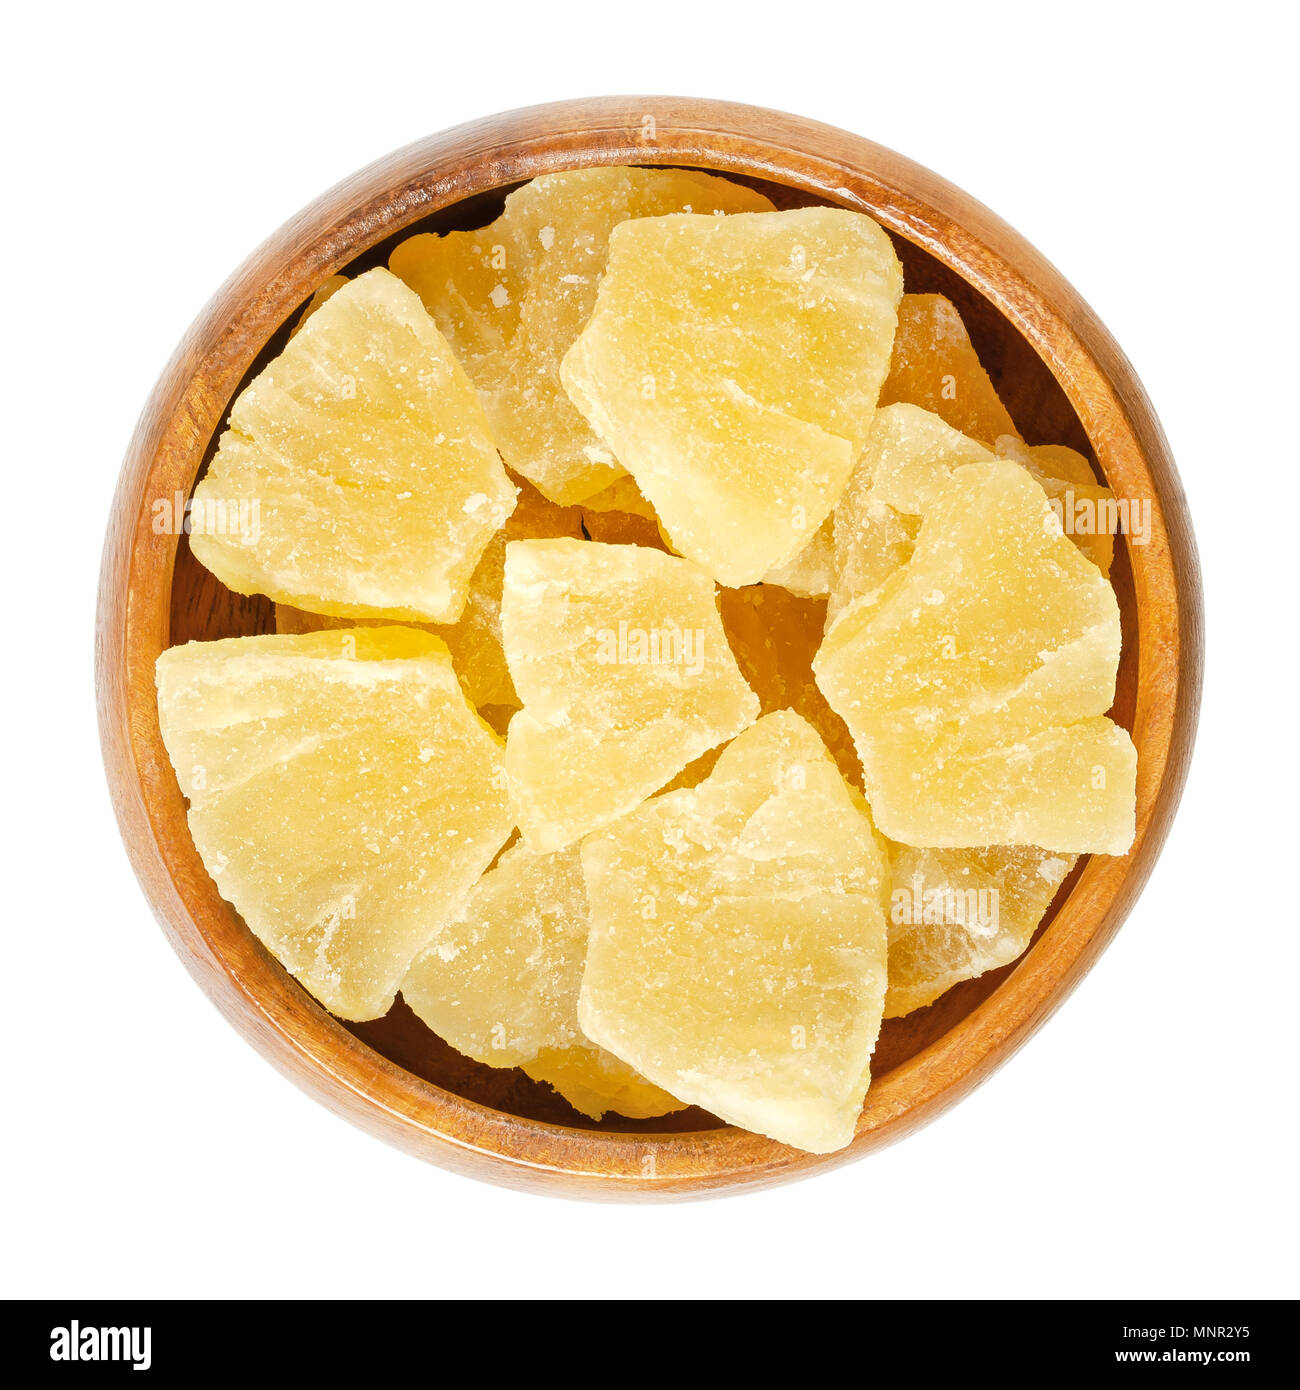 Morceaux d'ananas confits dans bol en bois. Des morceaux de confit Ananas comosus. Chair de couleur jaune des fruits confits au sucre. Snack. Banque D'Images